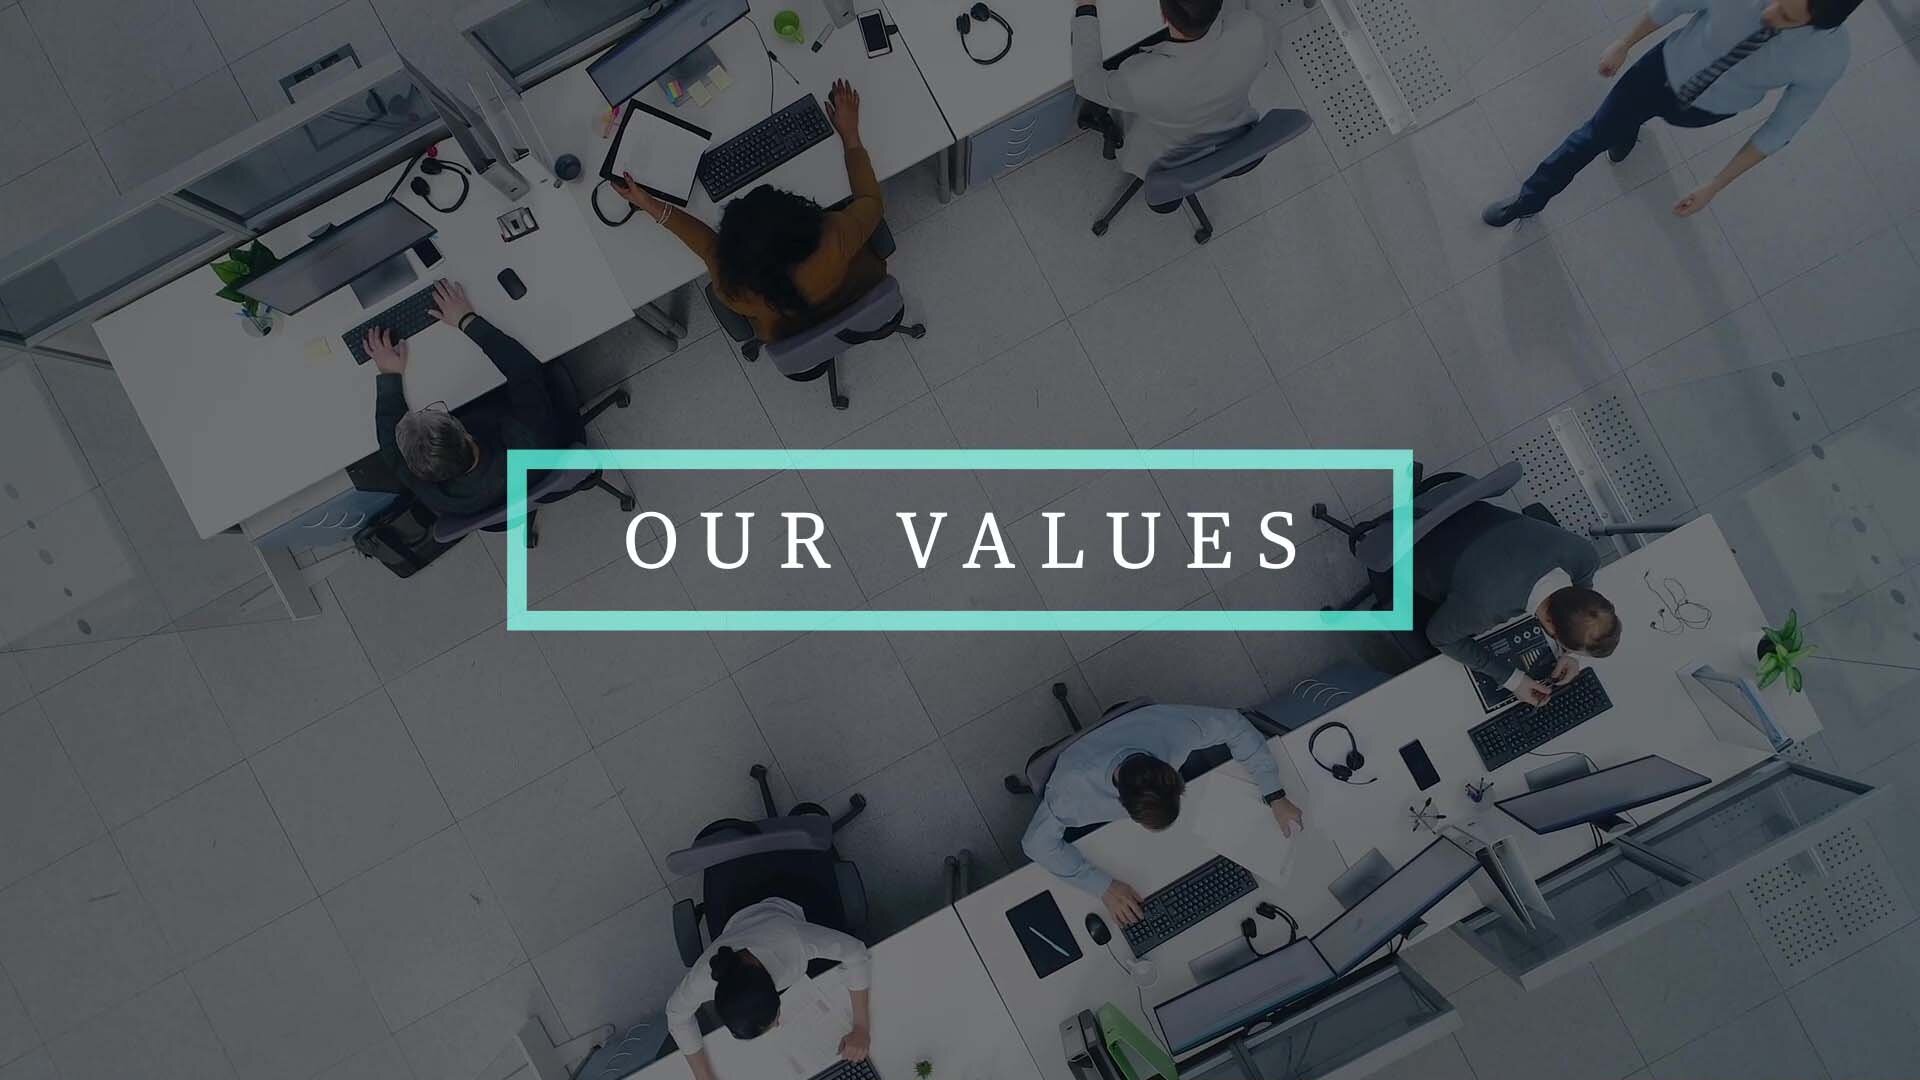 Company's Values